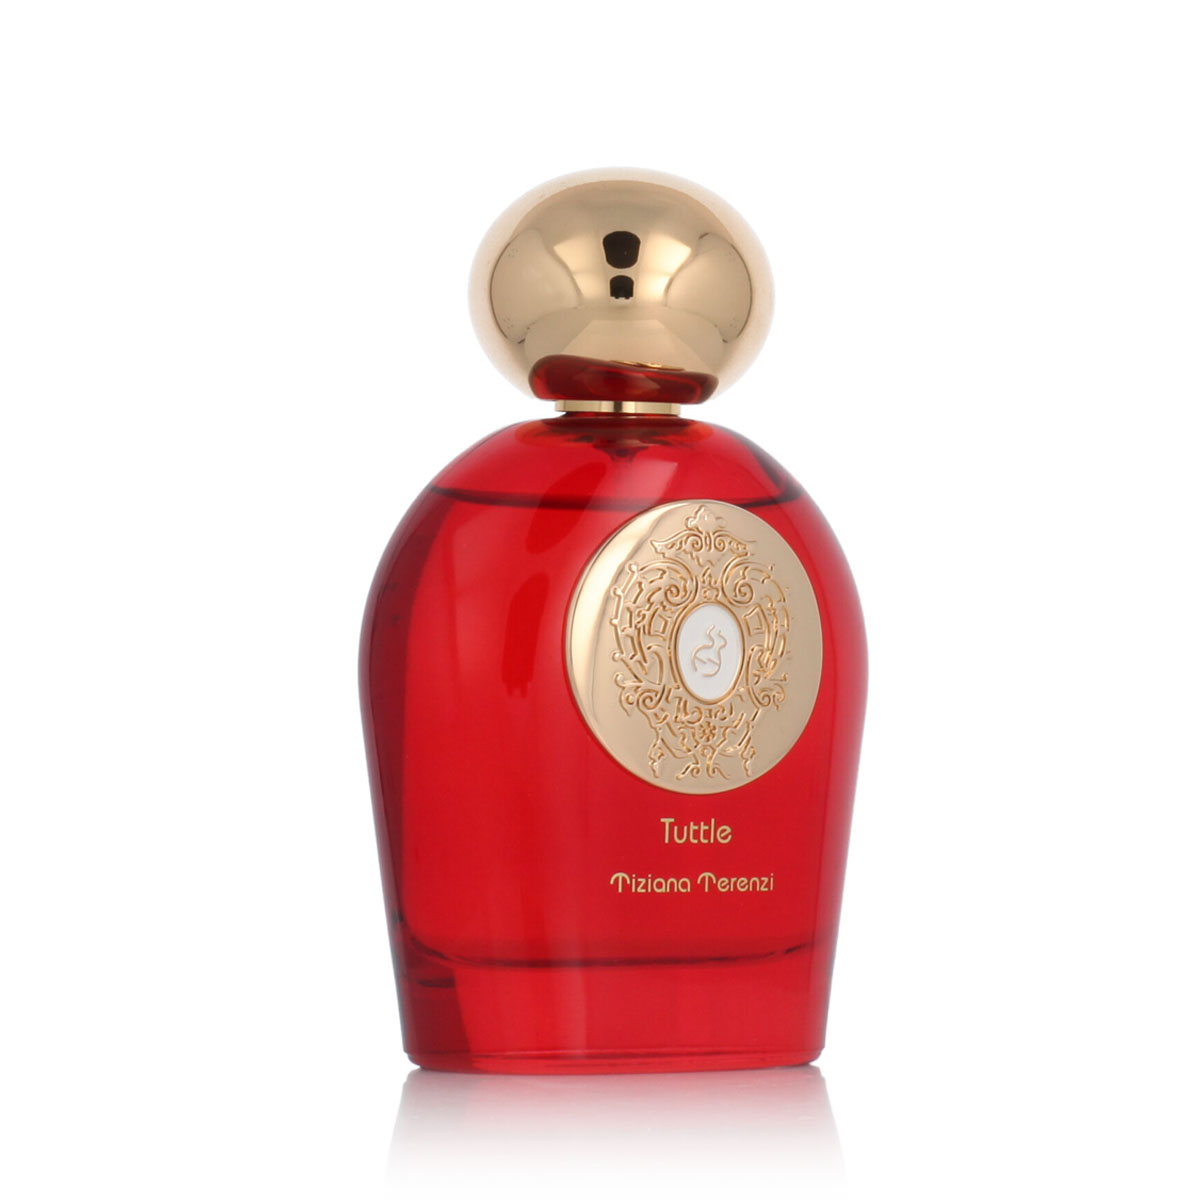 Tiziana Terenzi Tuttle 20 ml NIŠINIAI kvepalų mėginukas (atomaizeris) Unisex Parfum